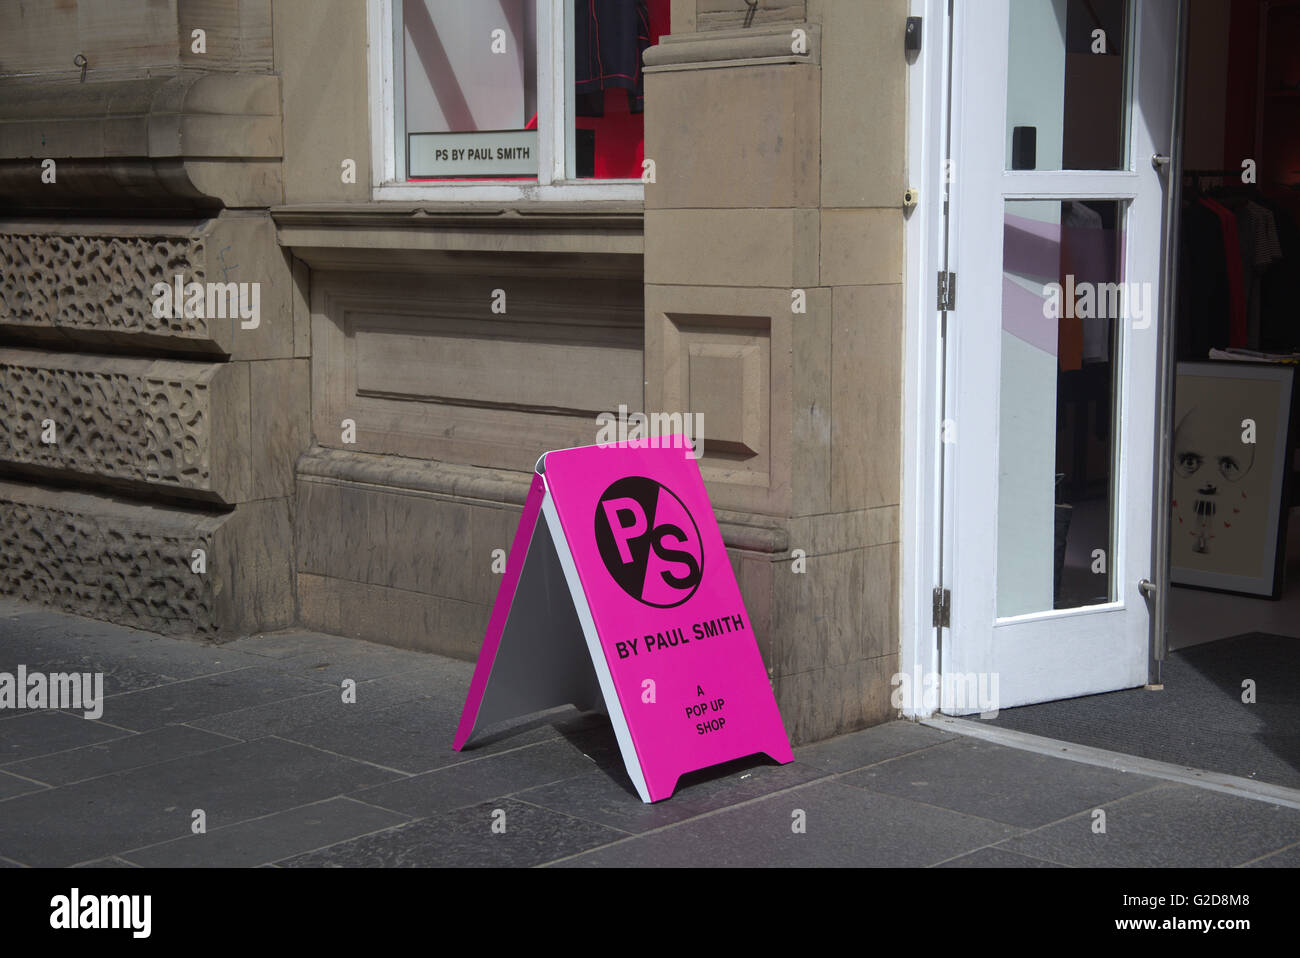 Glasgow, Royaume-Uni. 28 mai, 2016. Le célèbre styliste britannique Paul Smith a ouvert son premier magasin écossais, un pop-up concept magasin,whuch est ouvert pour une durée de six mois. Son sentiment spécial pour la ville a été récemment mis en lumière dans son 'Bonjour, mon nom est Paul Smith' exposition qui a couru dans 'Le Phare' de centre de conception plus tôt cette année. Credit : Gérard ferry/Alamy Live News Banque D'Images